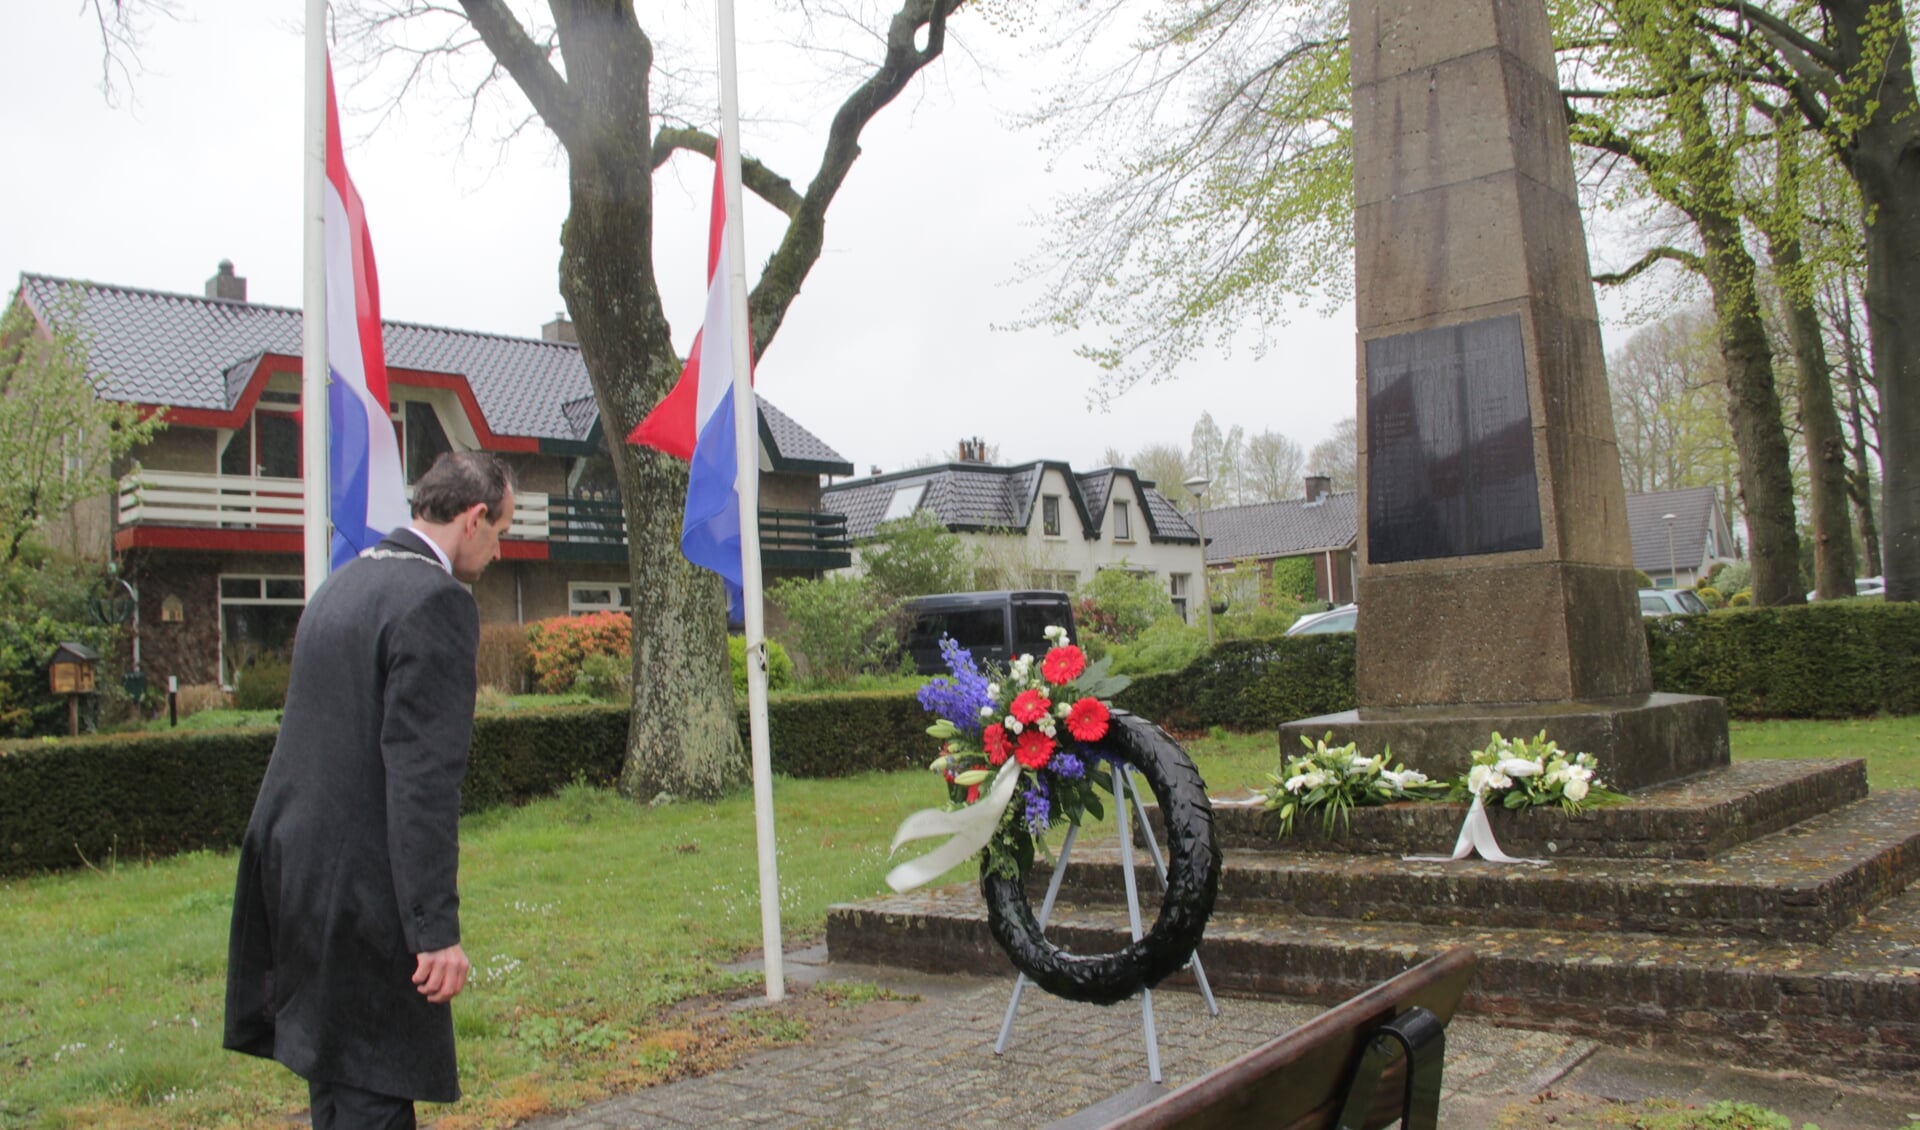 Burgemeester legt krans bij monument op de Clarenbeekseweg in Berg en Dal. (foto: Peter Hendriks)